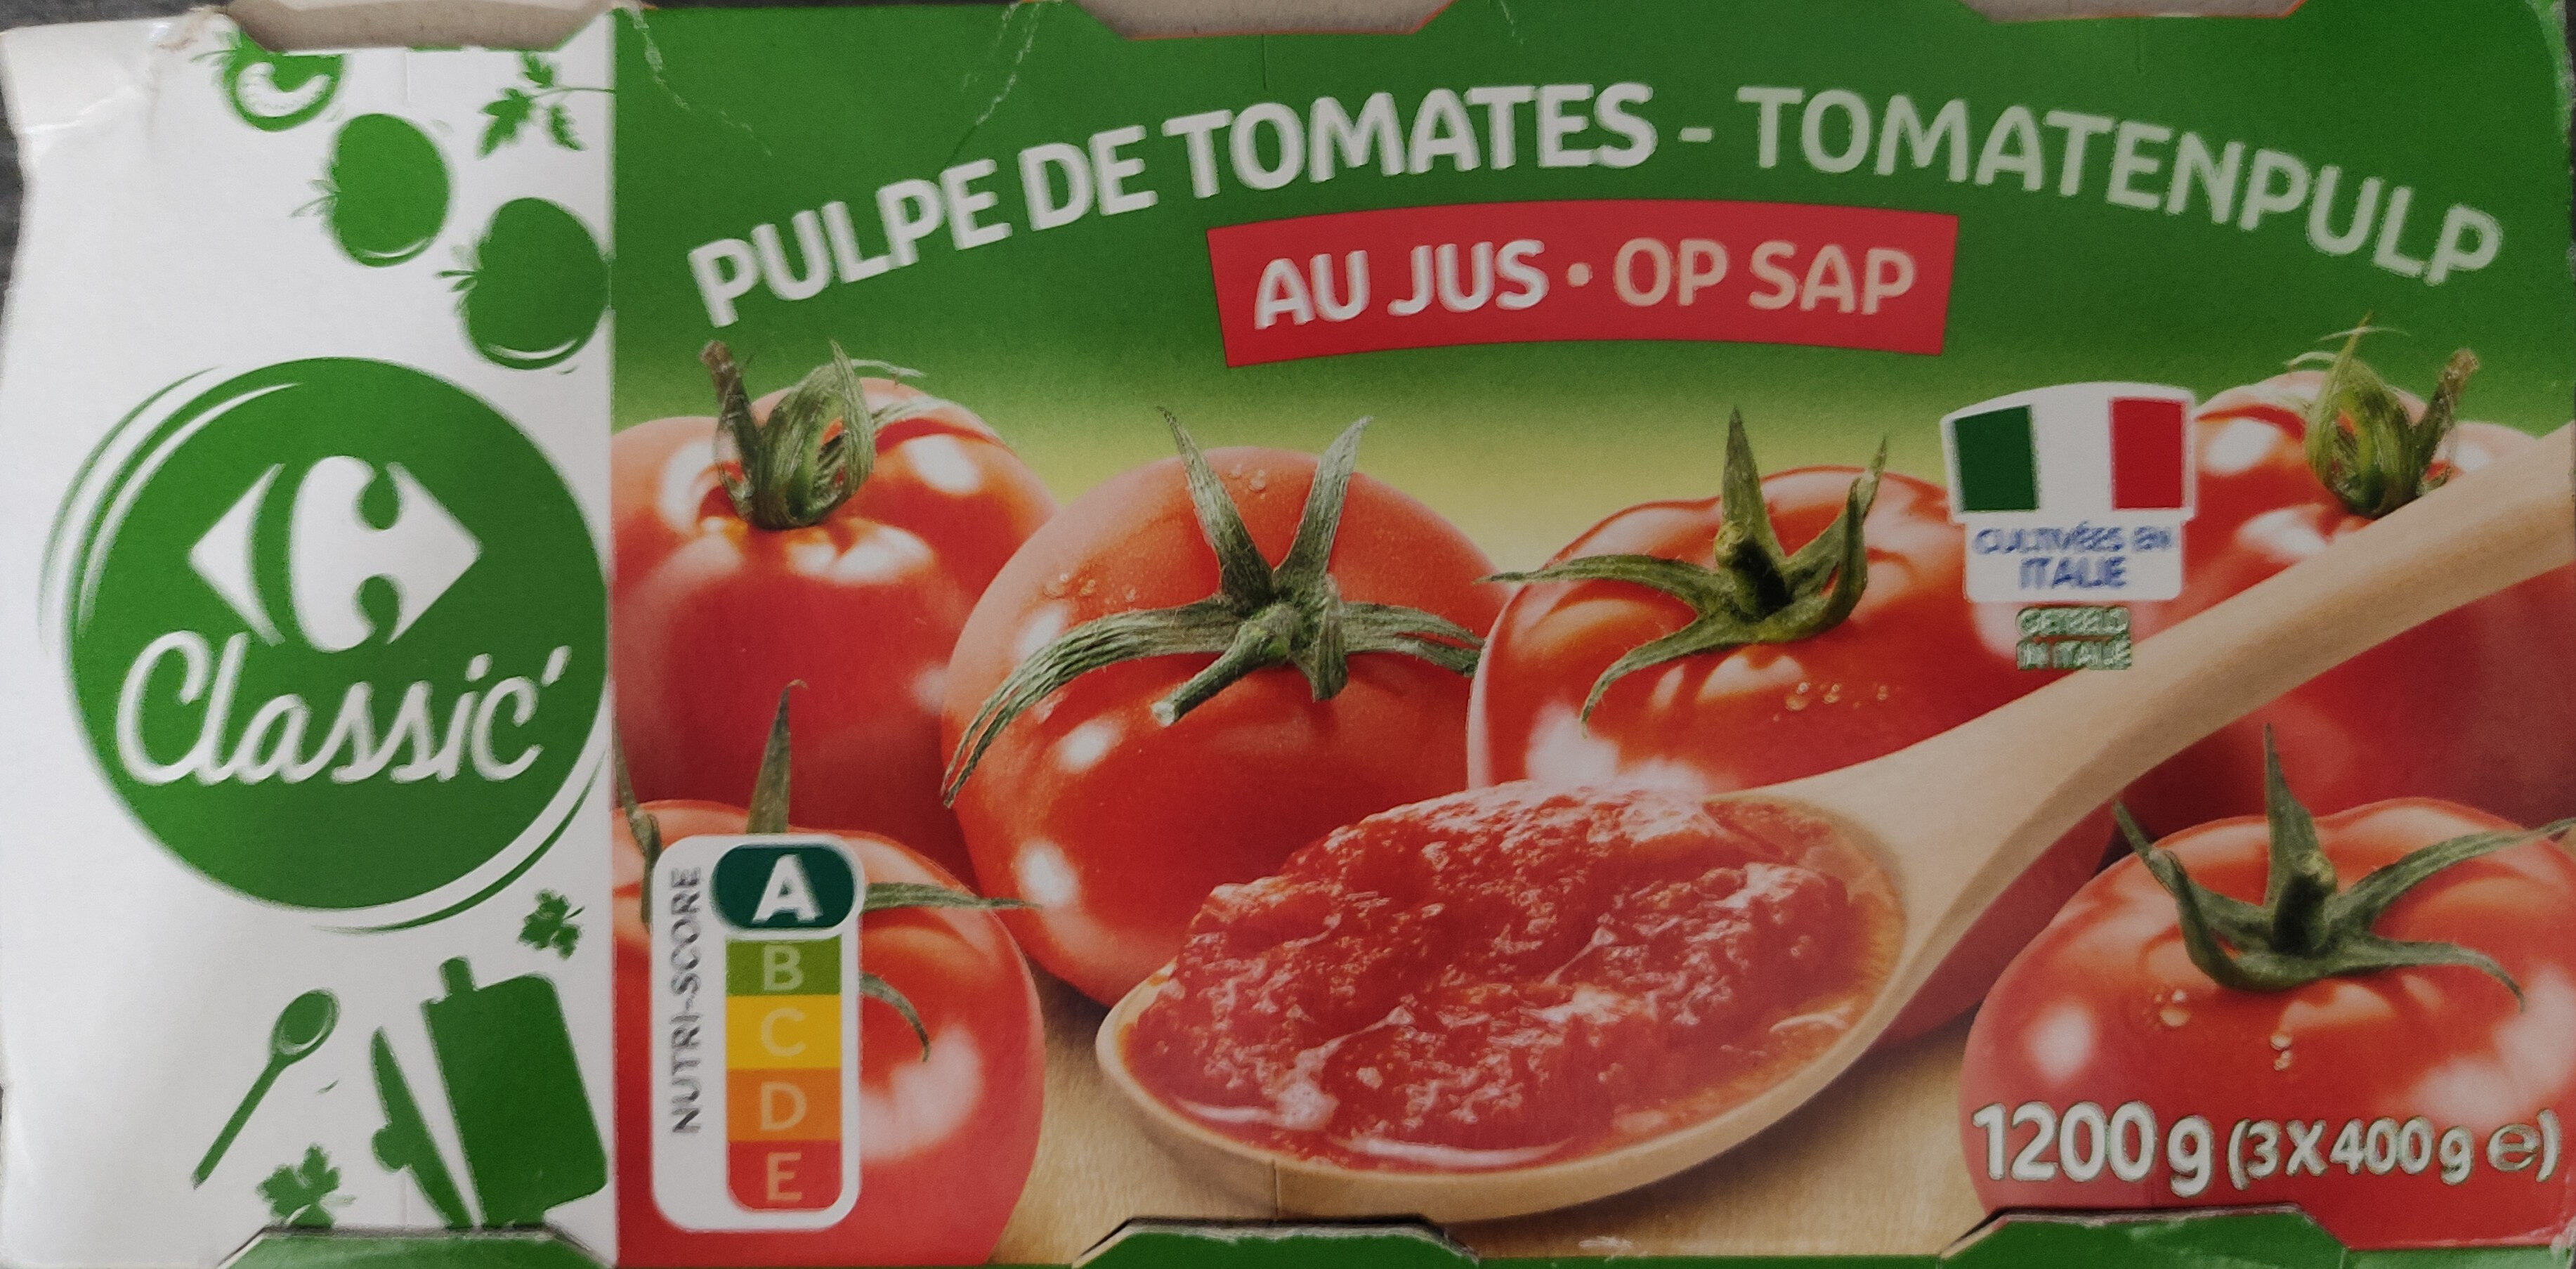 Pulpe de tomates au jus - Producte - fr